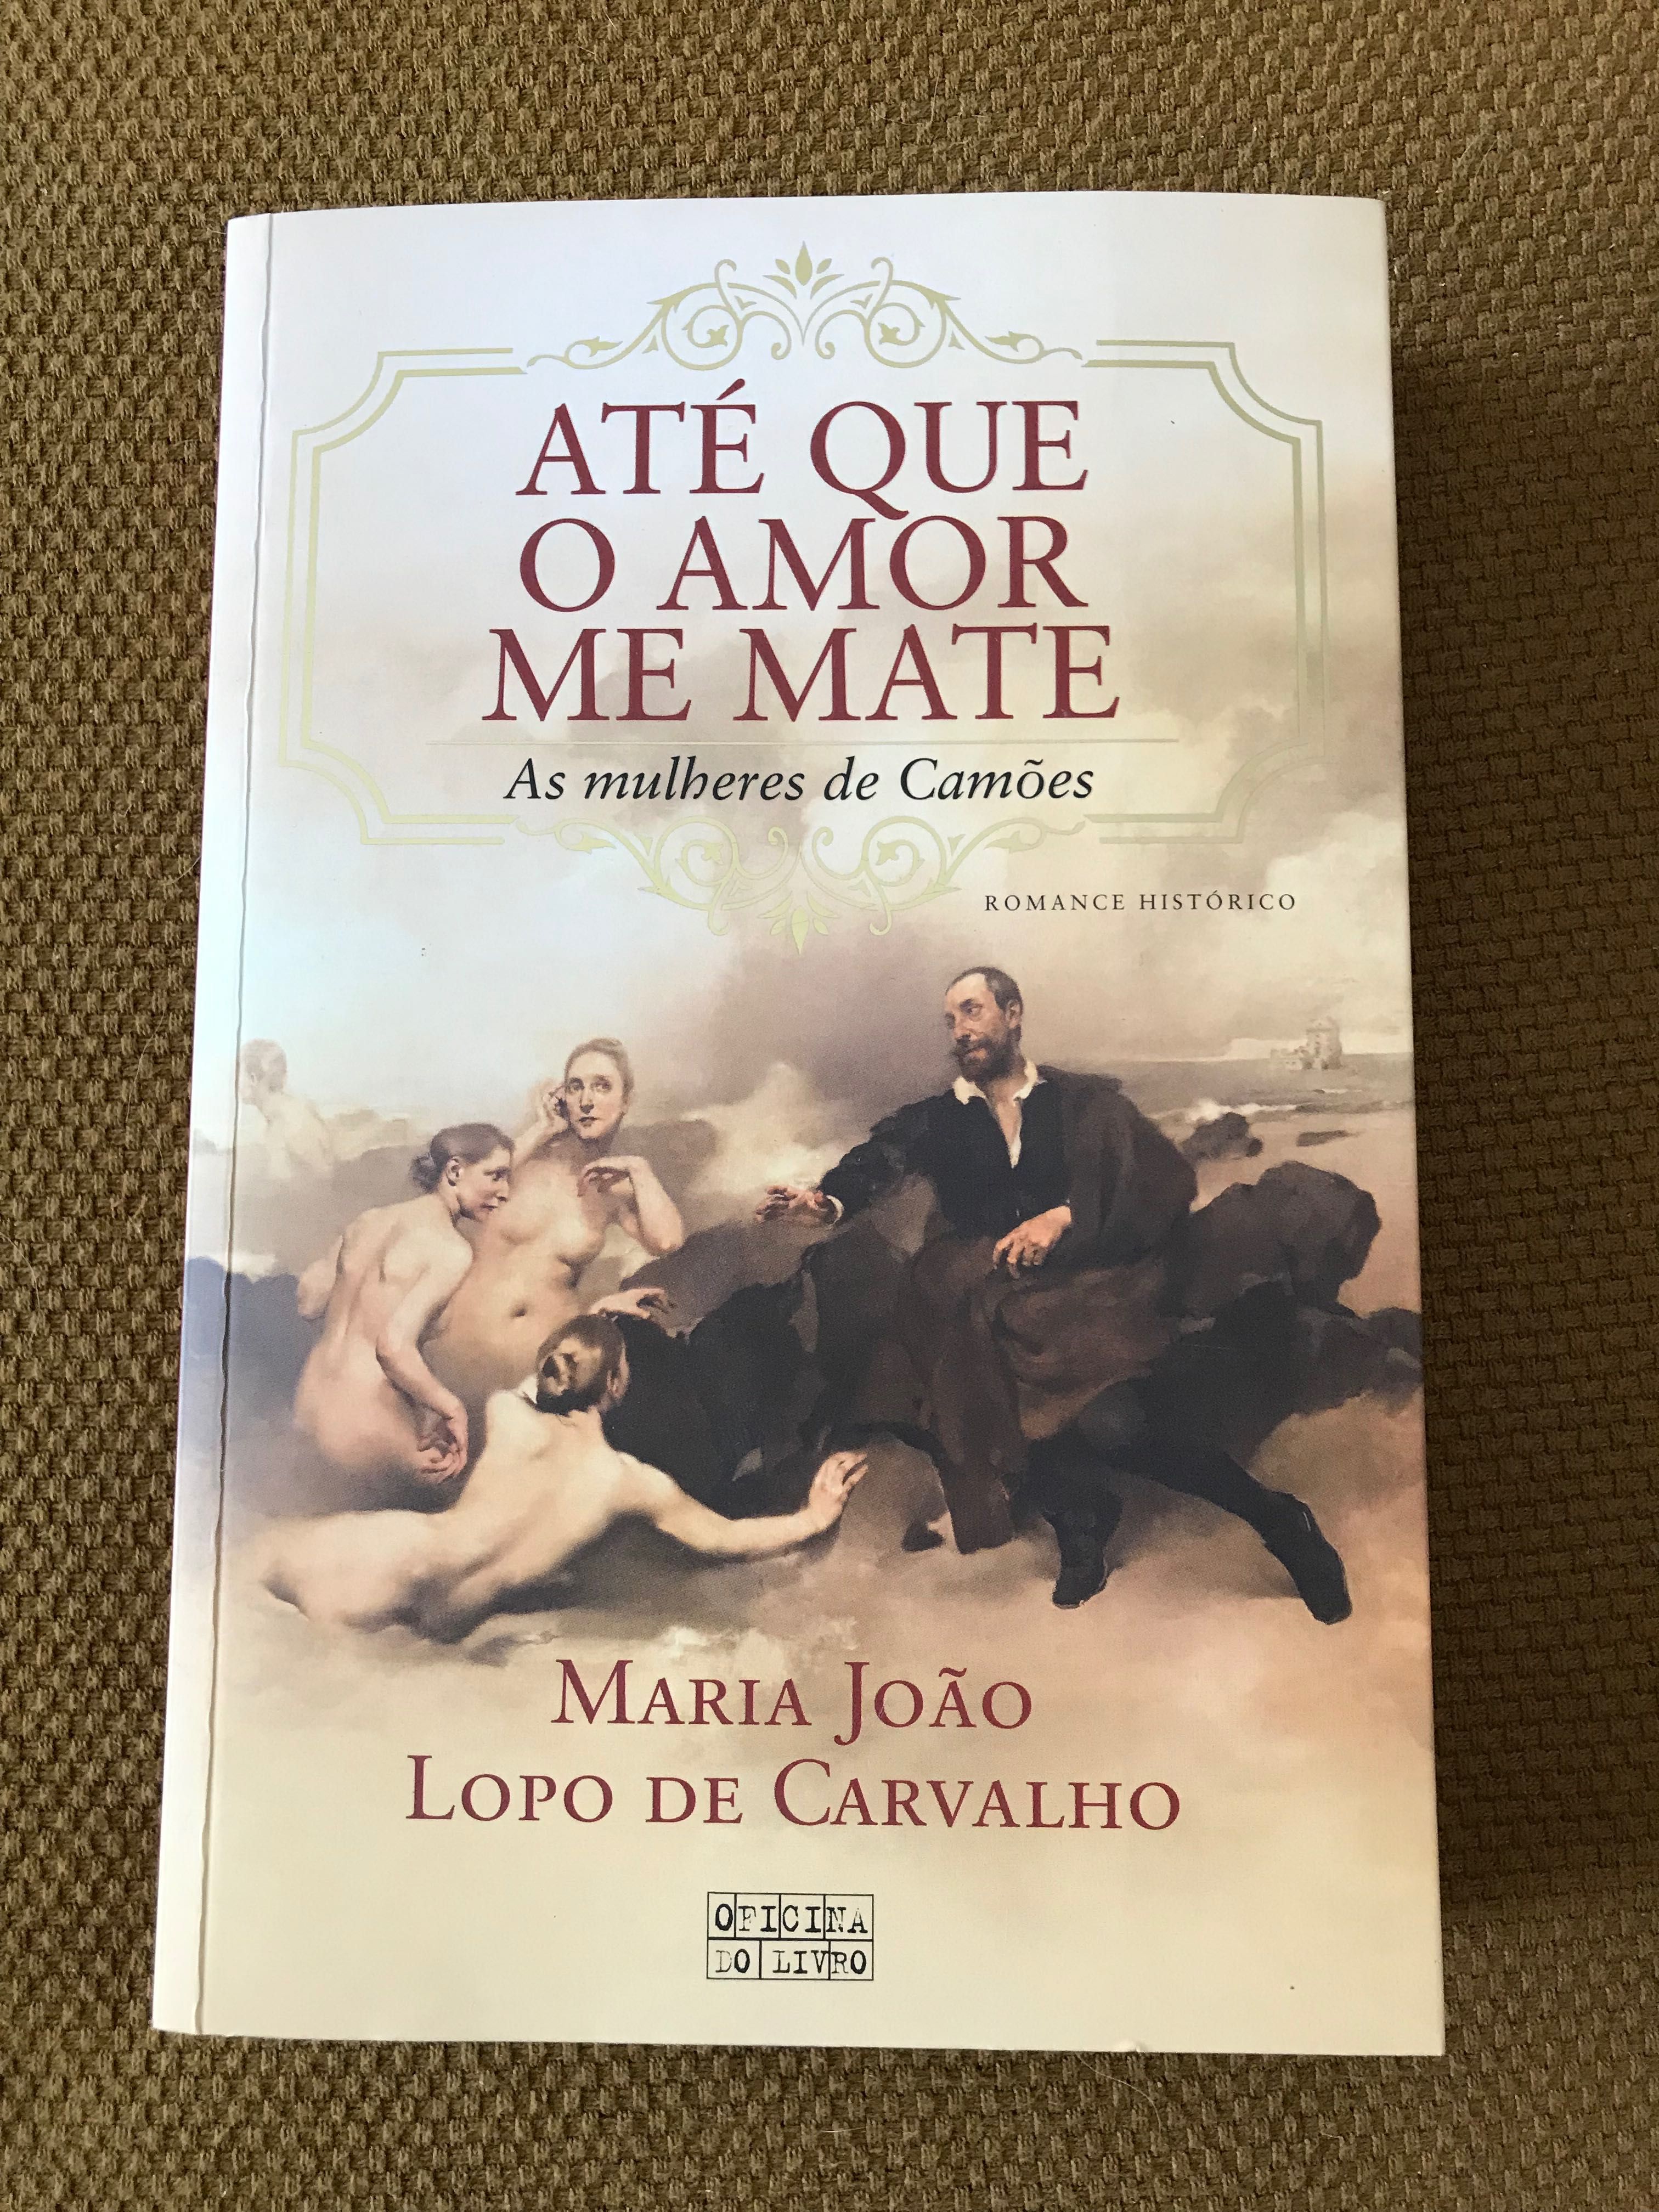 Livro “Até que o amor me mate”, de Maria João Lopo de Carvalho